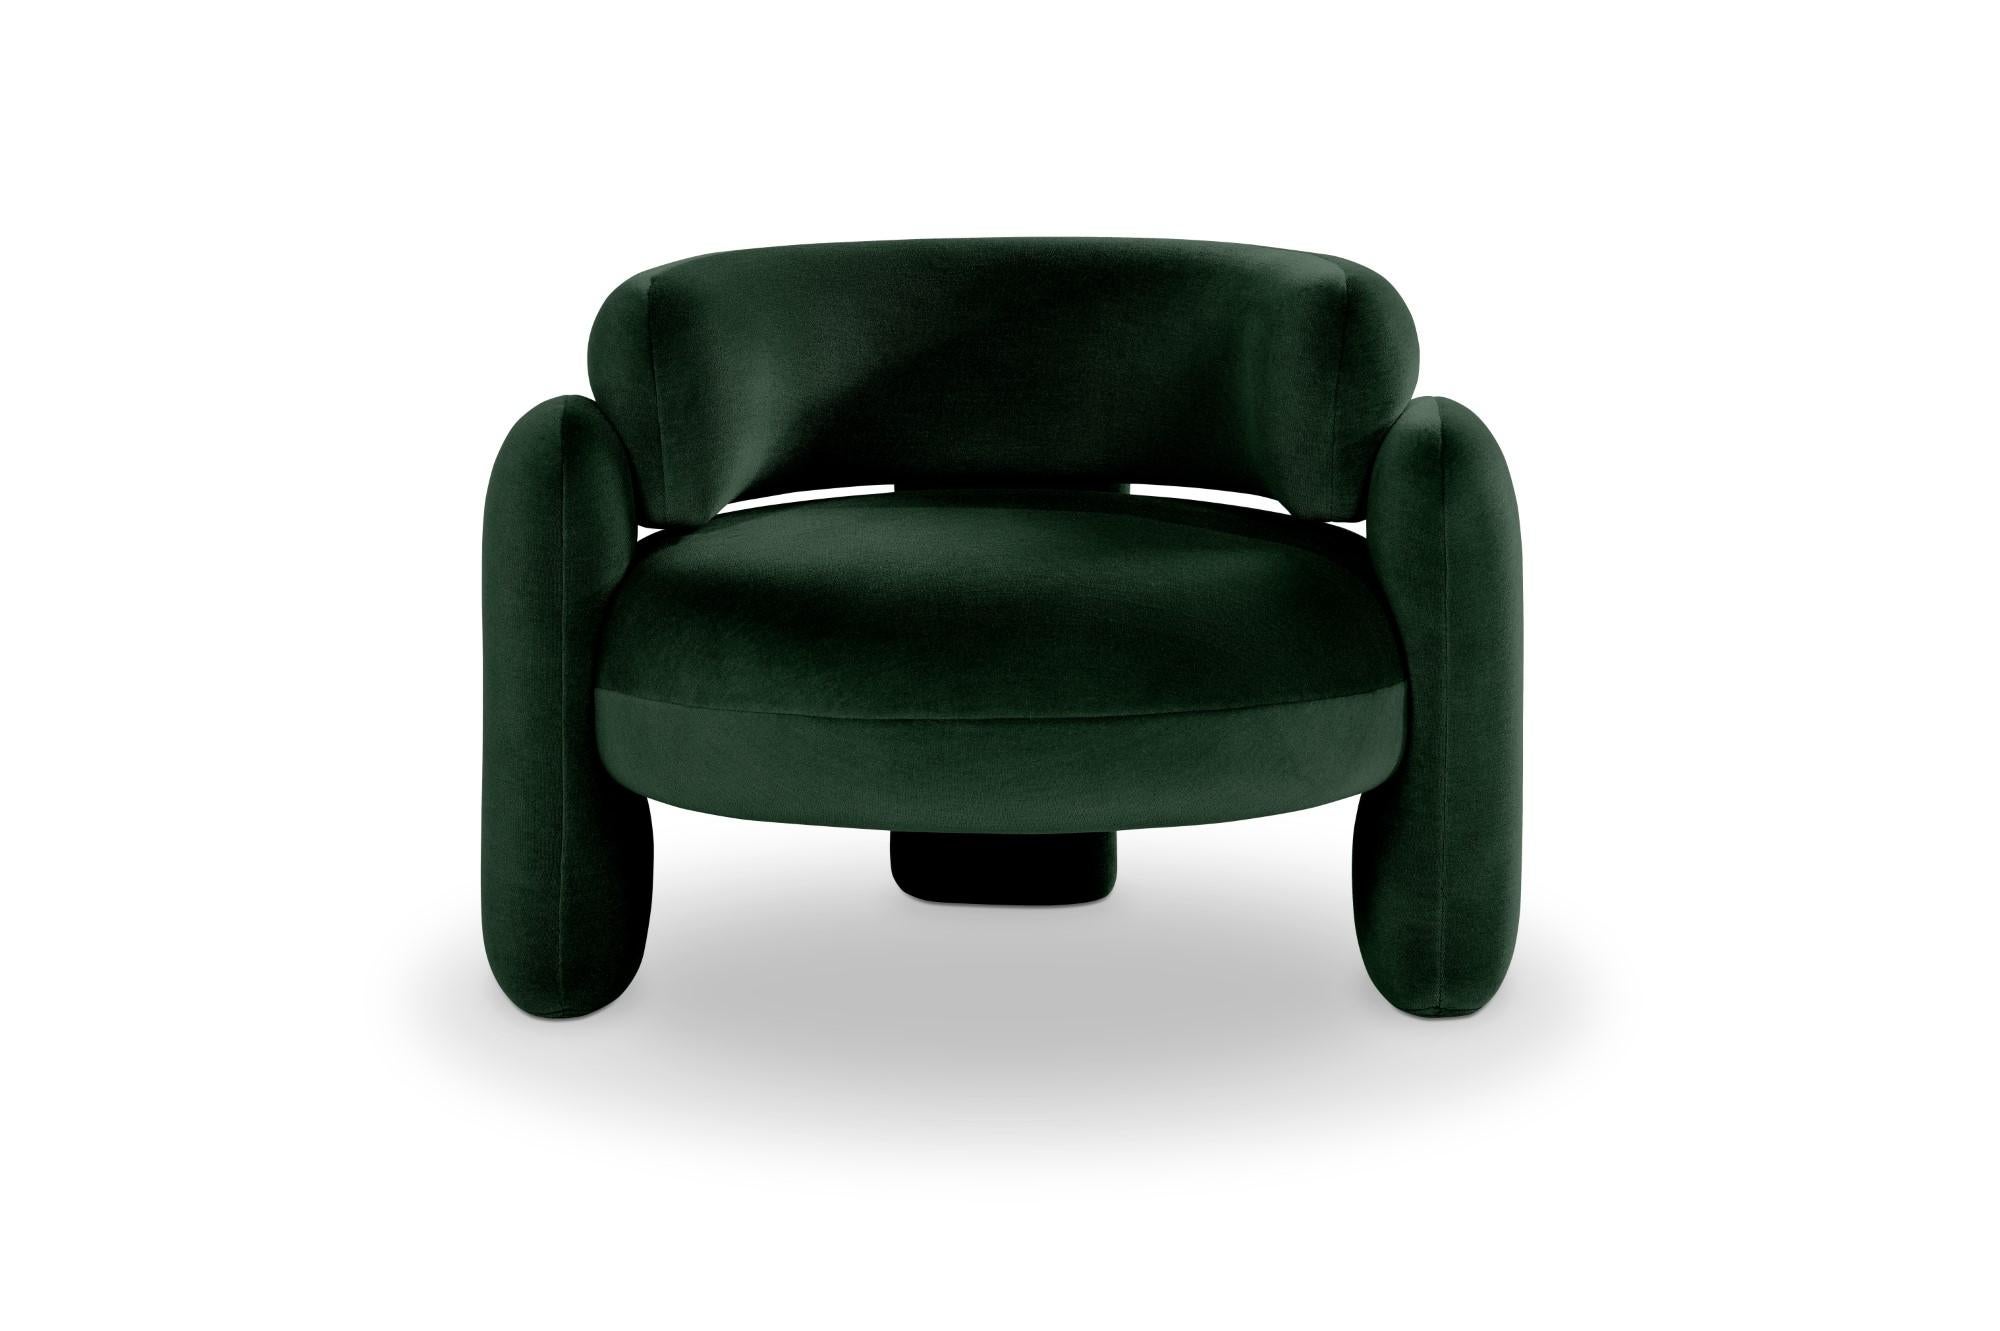 Embrace Gentle 973 Sessel von Royal Stranger 
Abmessungen: B 96 x T 85 x H 68 cm.
Es sind verschiedene Farben und Ausführungen der Polsterung erhältlich. Bitte kontaktieren Sie uns.
MATERIALIEN: Polstermöbel.

Der Embrace Armchair ist eine